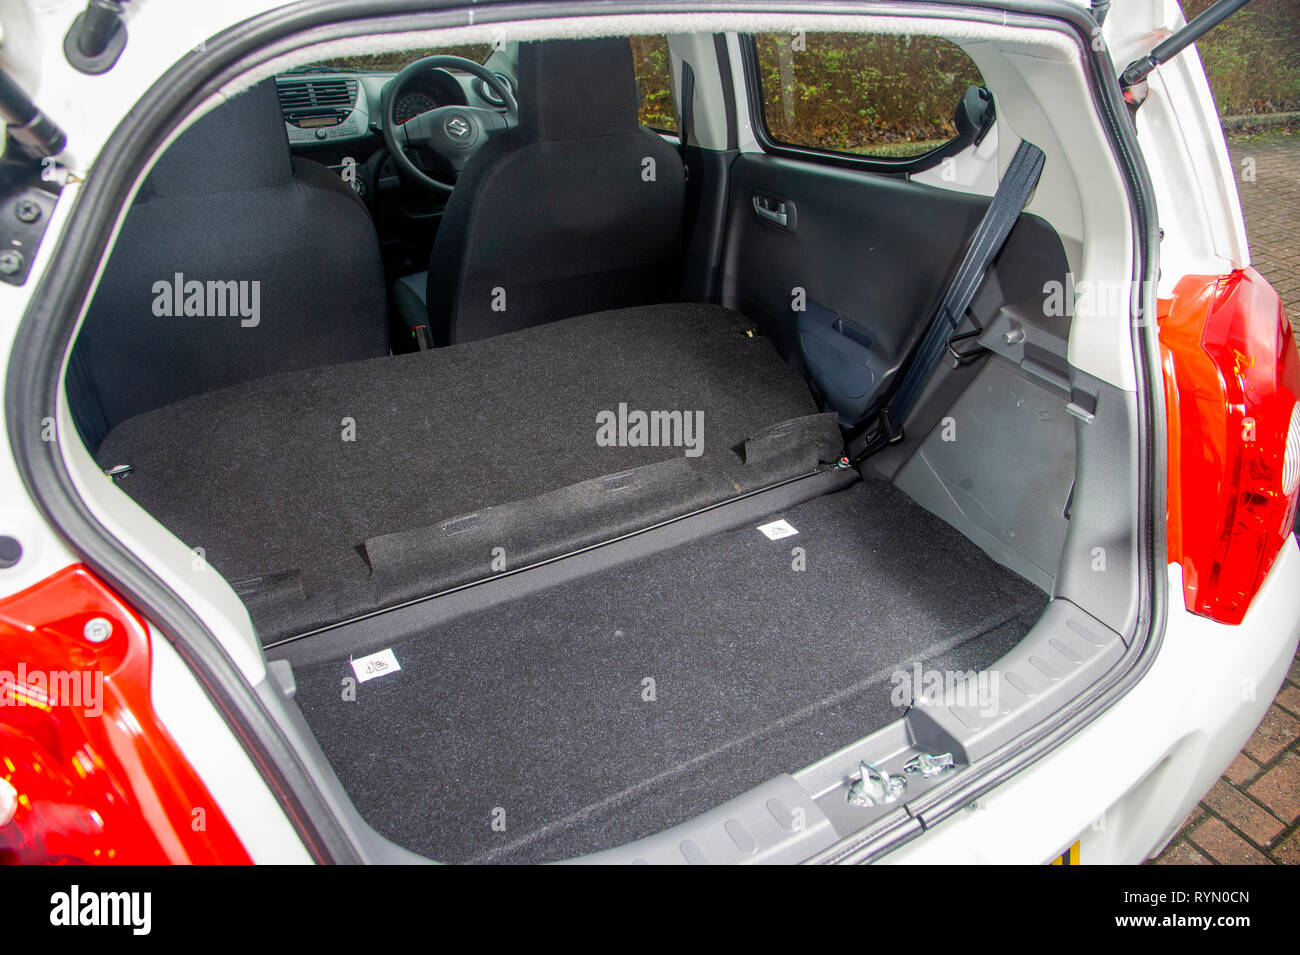 2014 Suzuki Alto compact city car Stock Photo